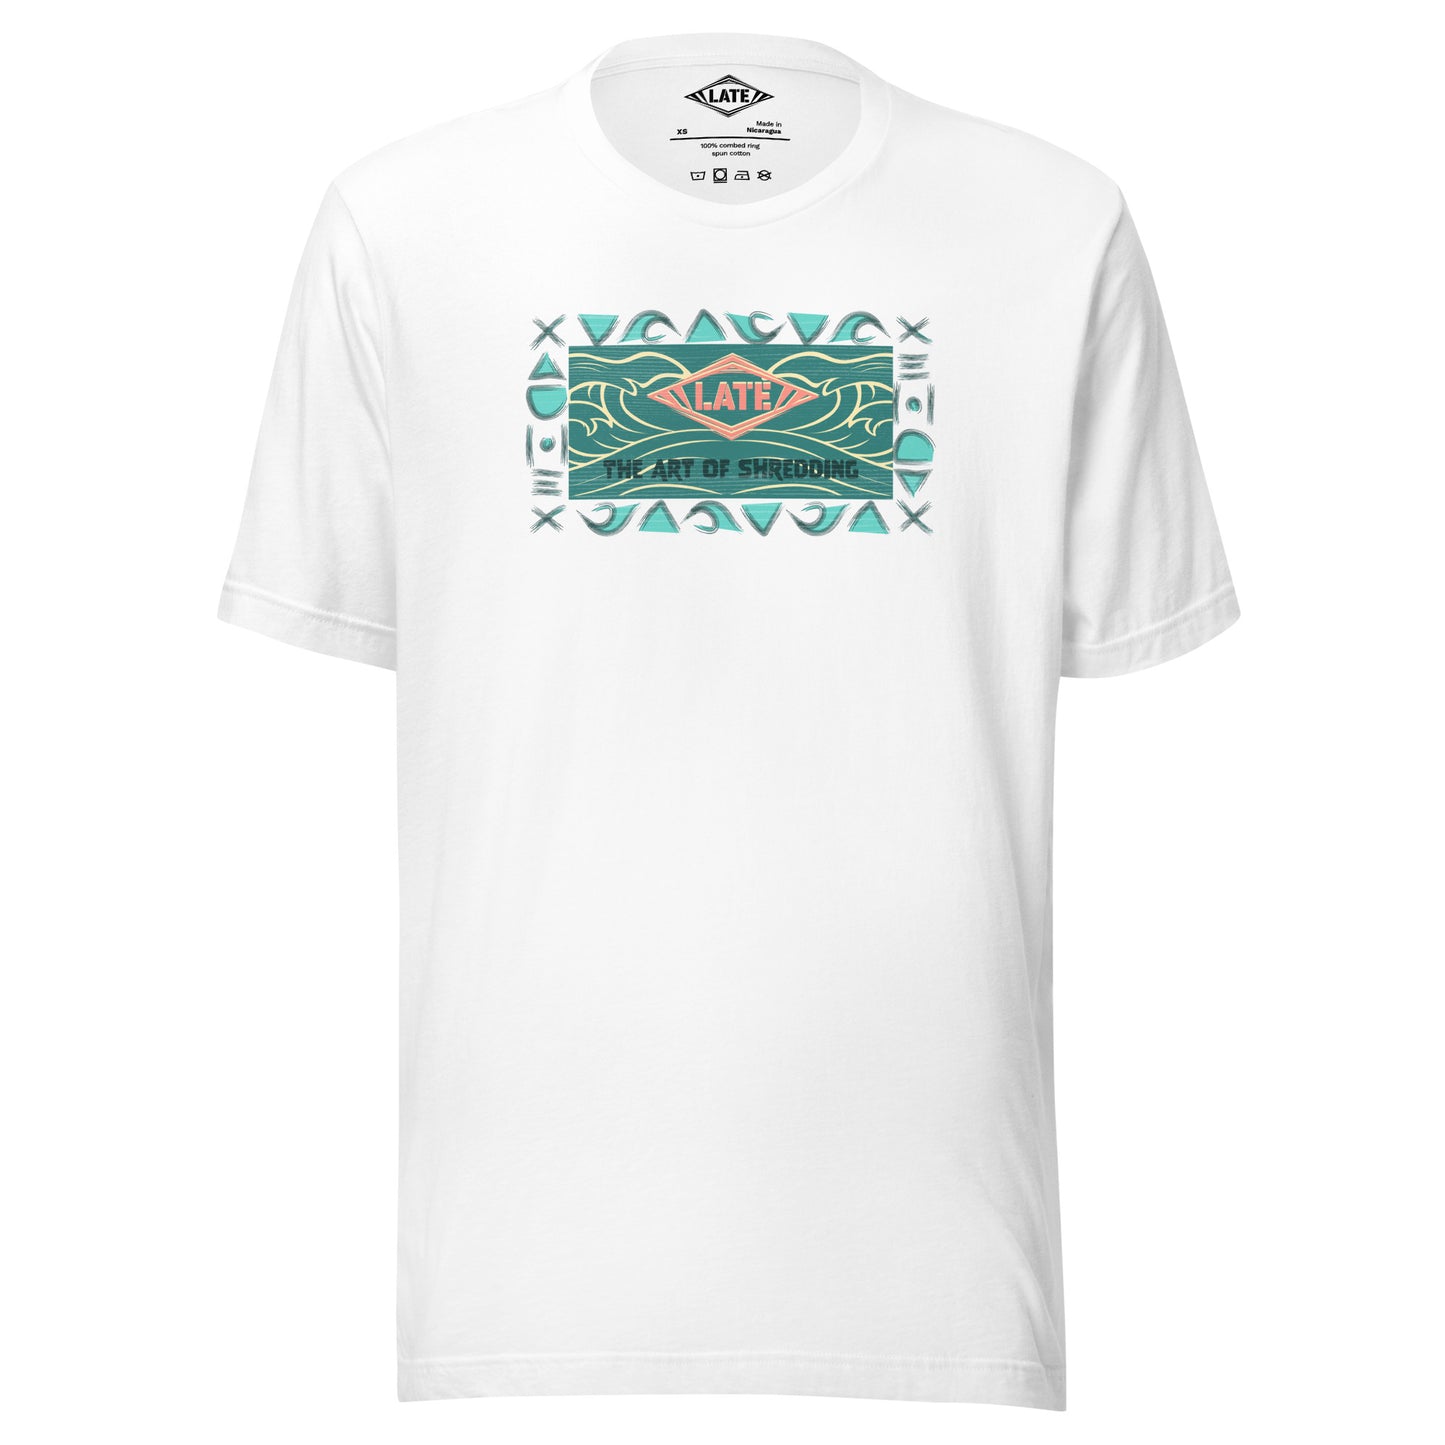 T-Shirt rétro surfwear art of shredding, logo Late surfshop motifs de vagues creuses, et dom-tom, t-shirt unisex blanc